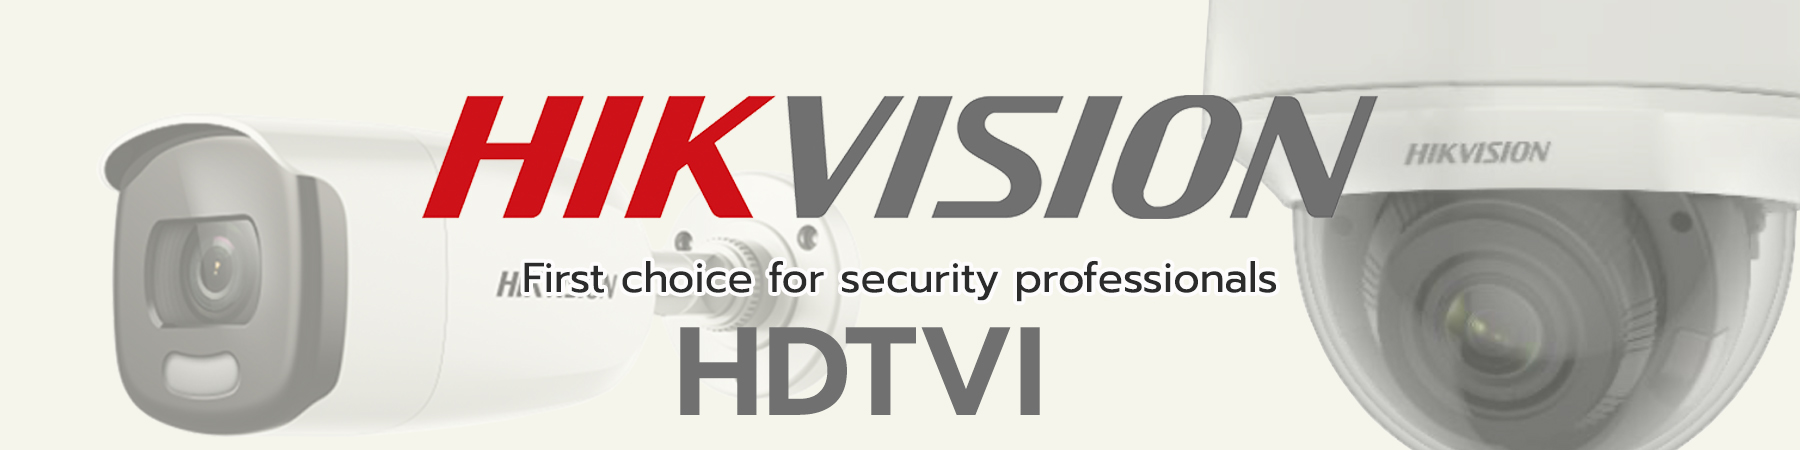 กล้องวงจรปิด Hikvision, กล้อง Hikvision Dual-Light, Hikvision ColorVu, Hikvision HDTVI 2MP, Hikvision HDTVI 5MP, ไมค์บันทึกเสียง